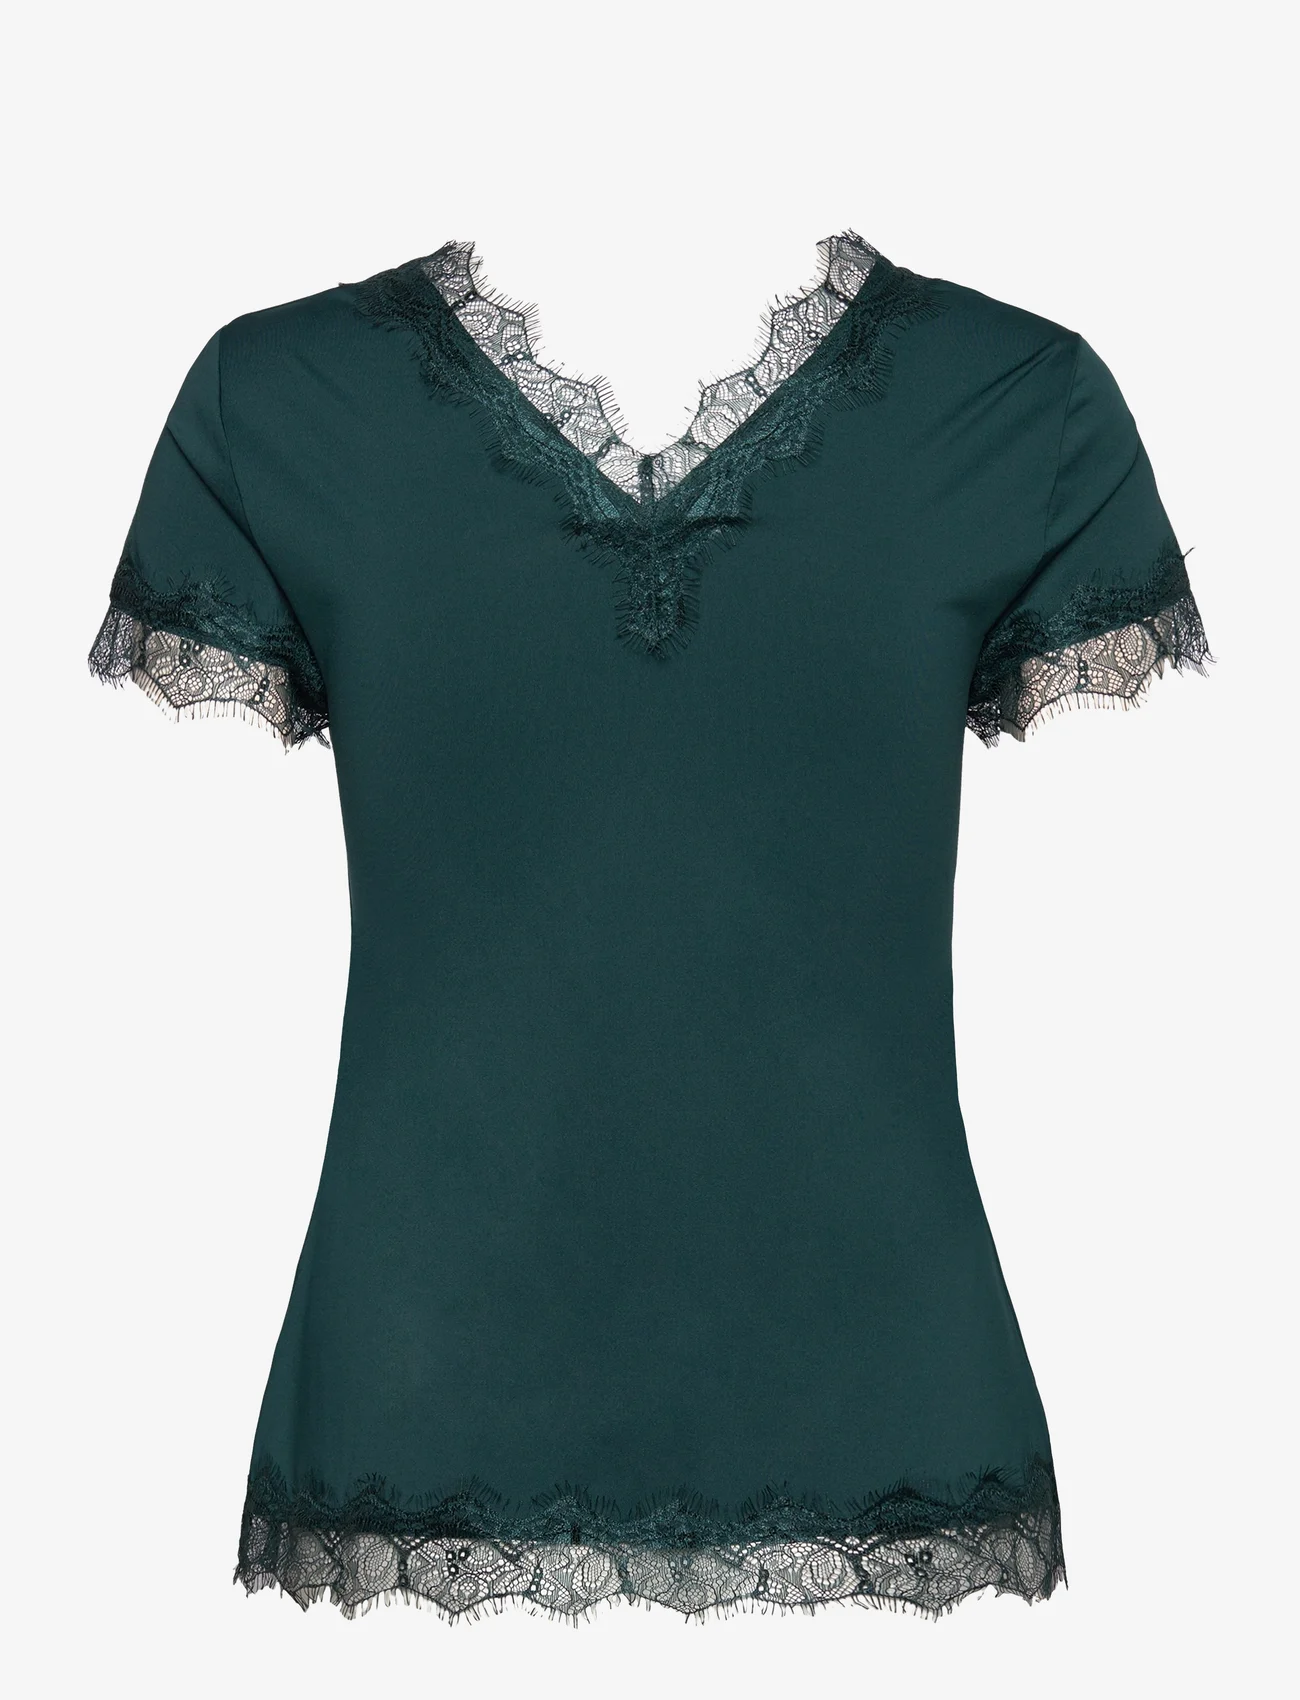 Rosemunde - T-shirt - blouses korte mouwen - dark teal - 1